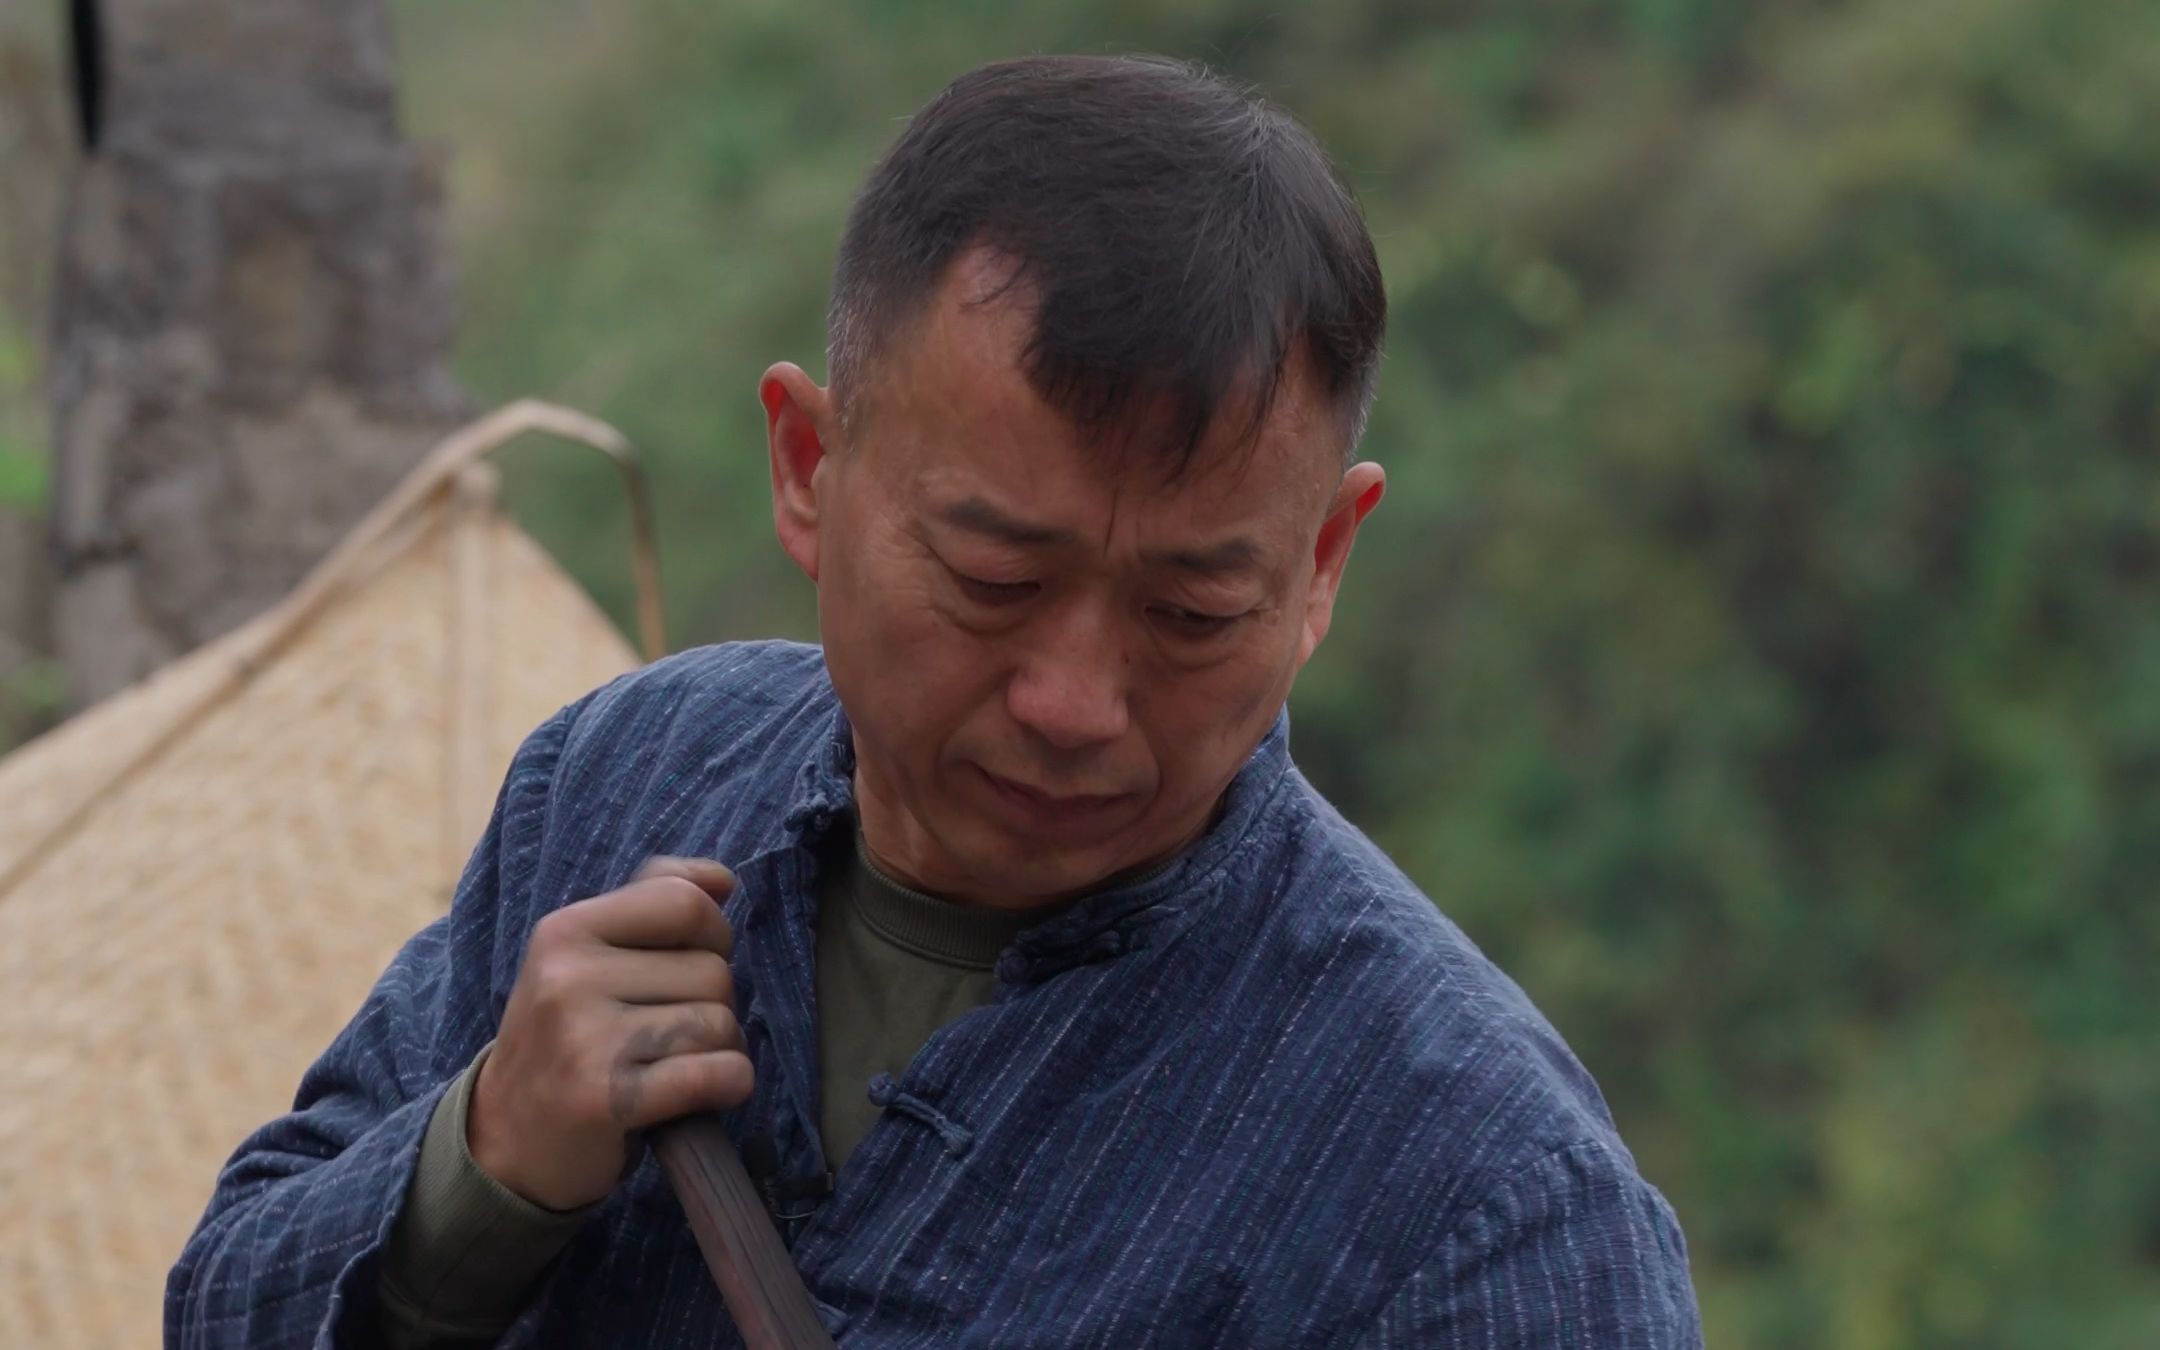 中国是世界上最早饲养家蚕，用其巢丝织绸的国家。-彭南科-彭南科-哔哩哔哩视频